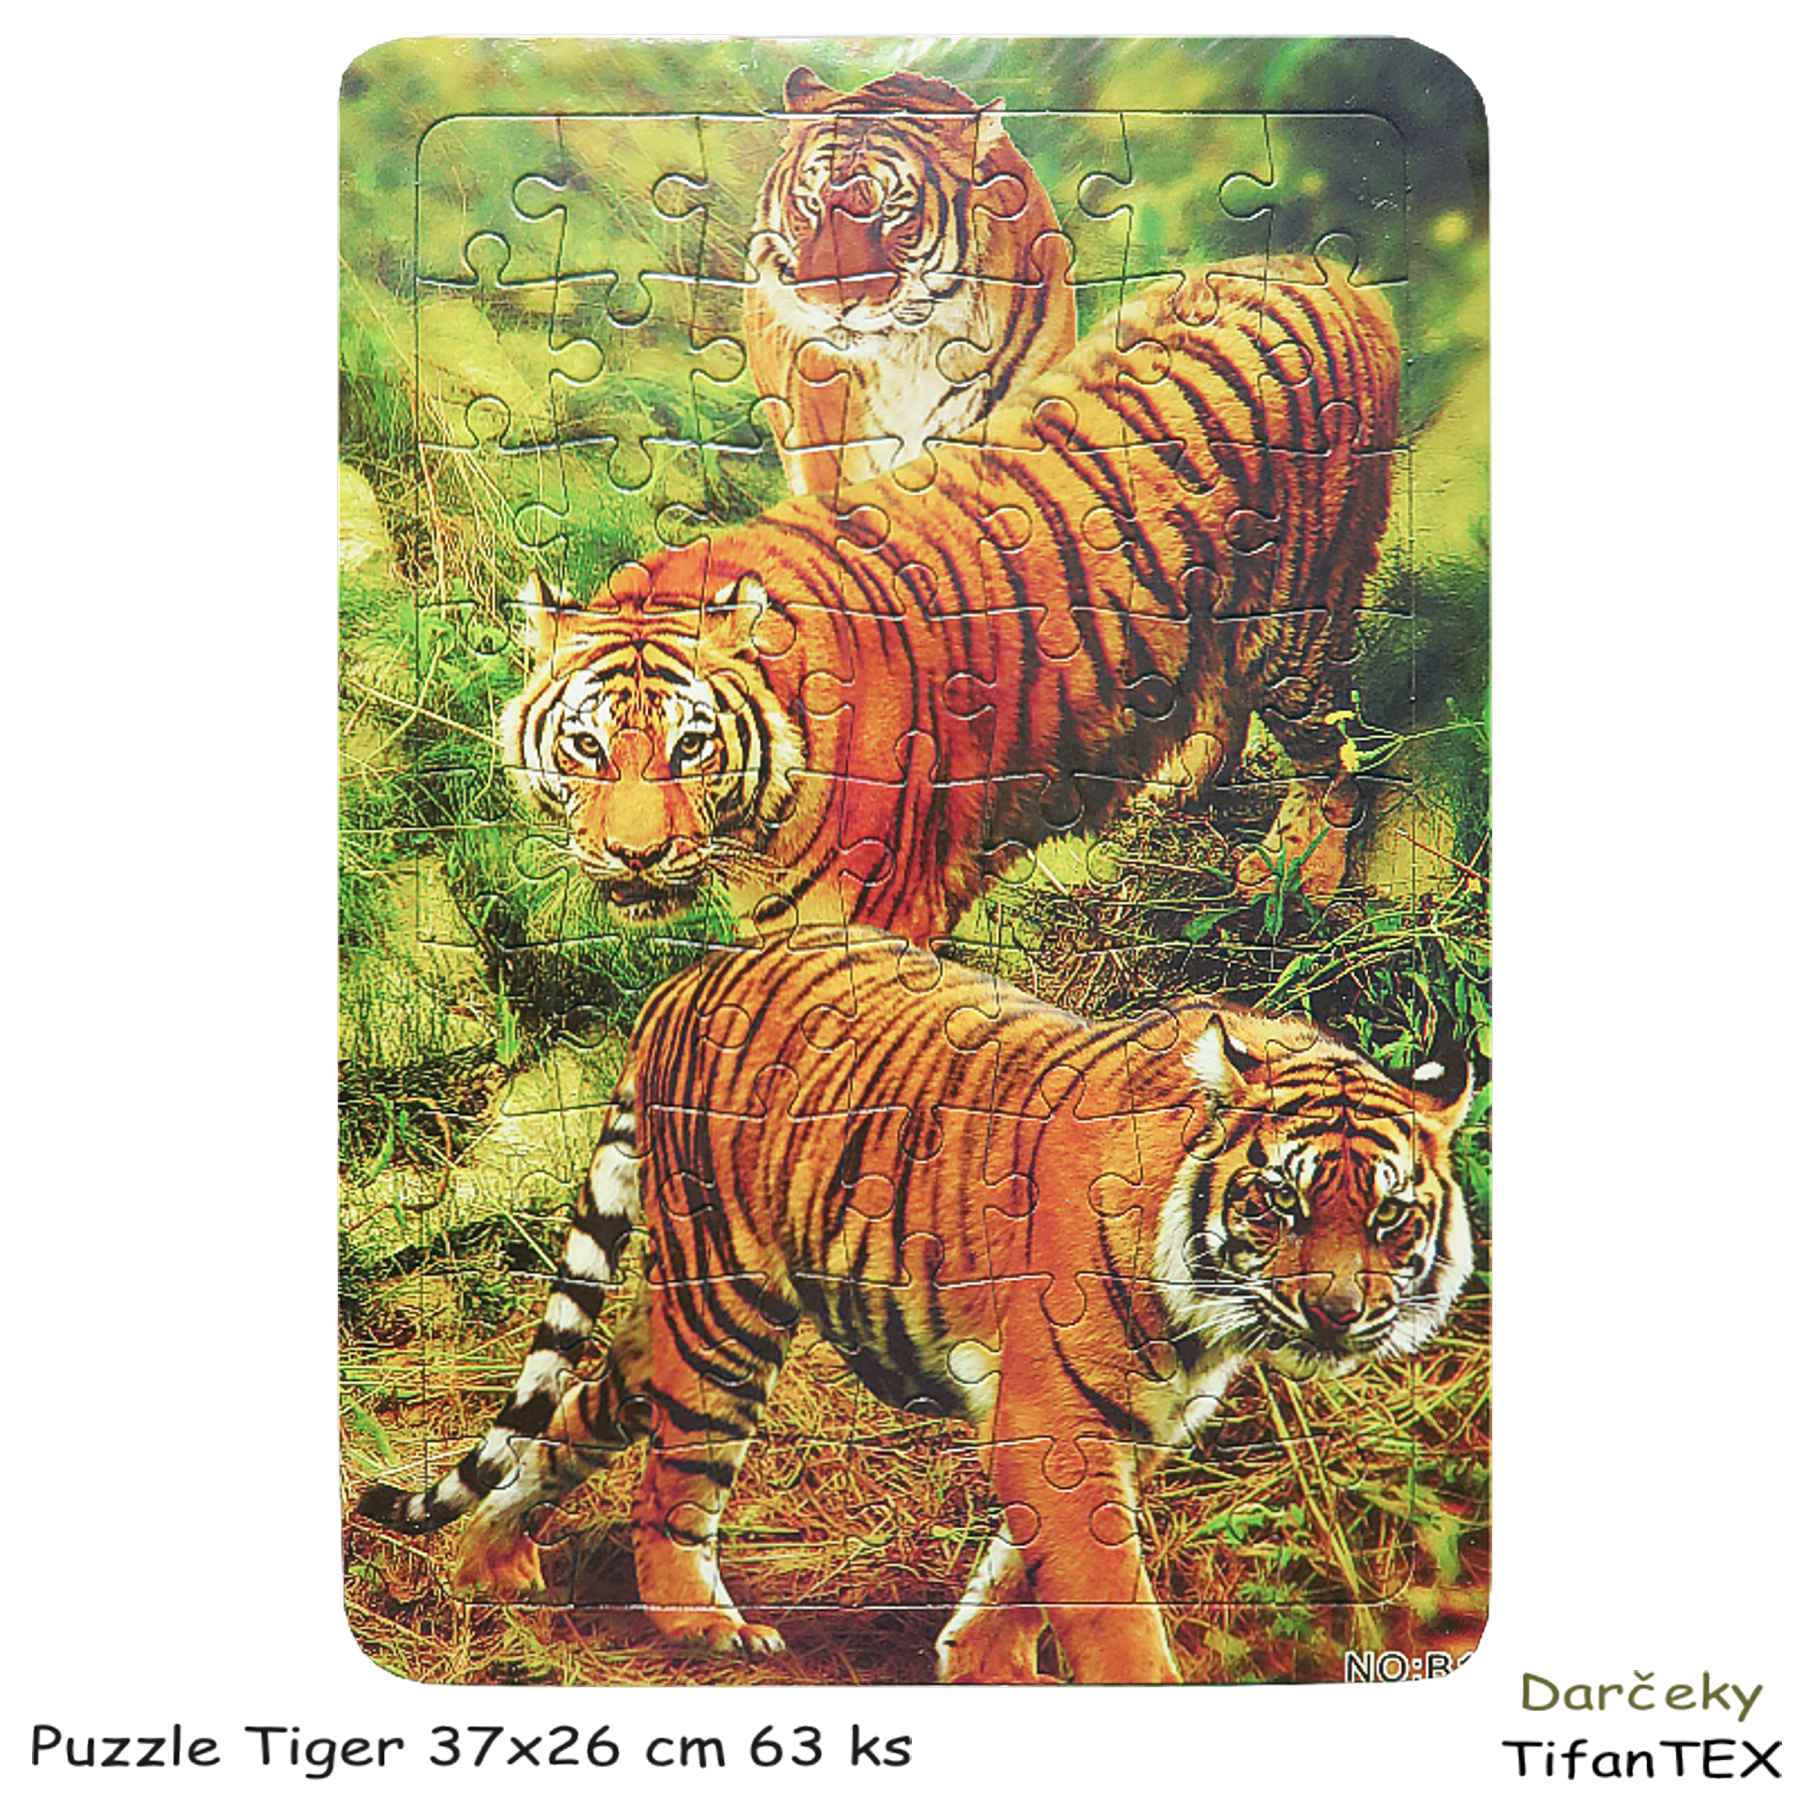 Puzzle Tiger 37x26 cm 63 ks